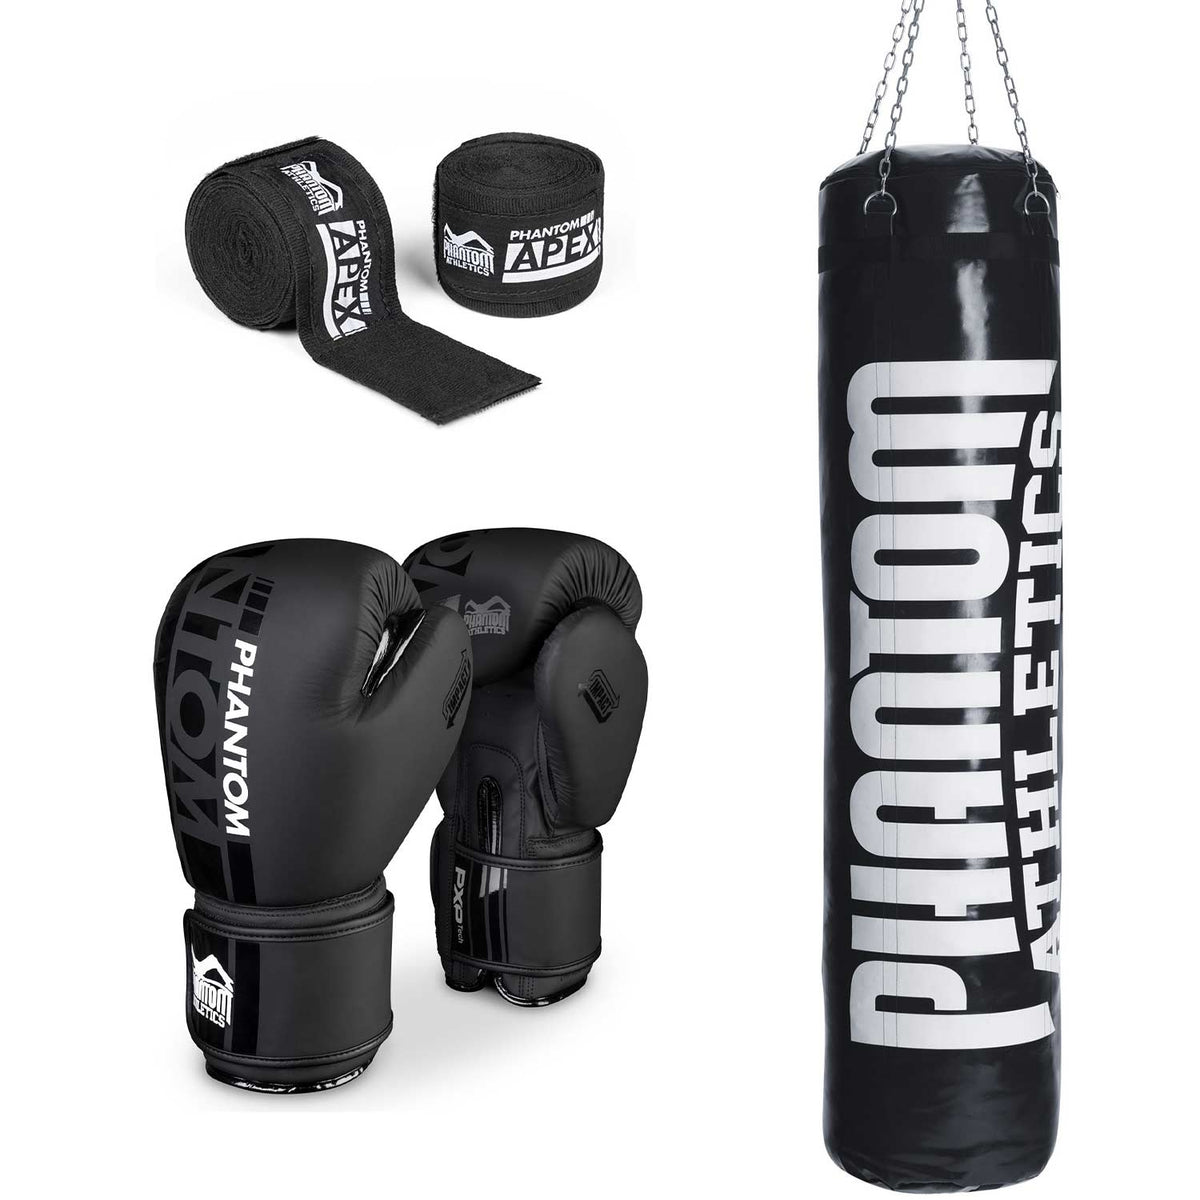 Punching bag set high performance